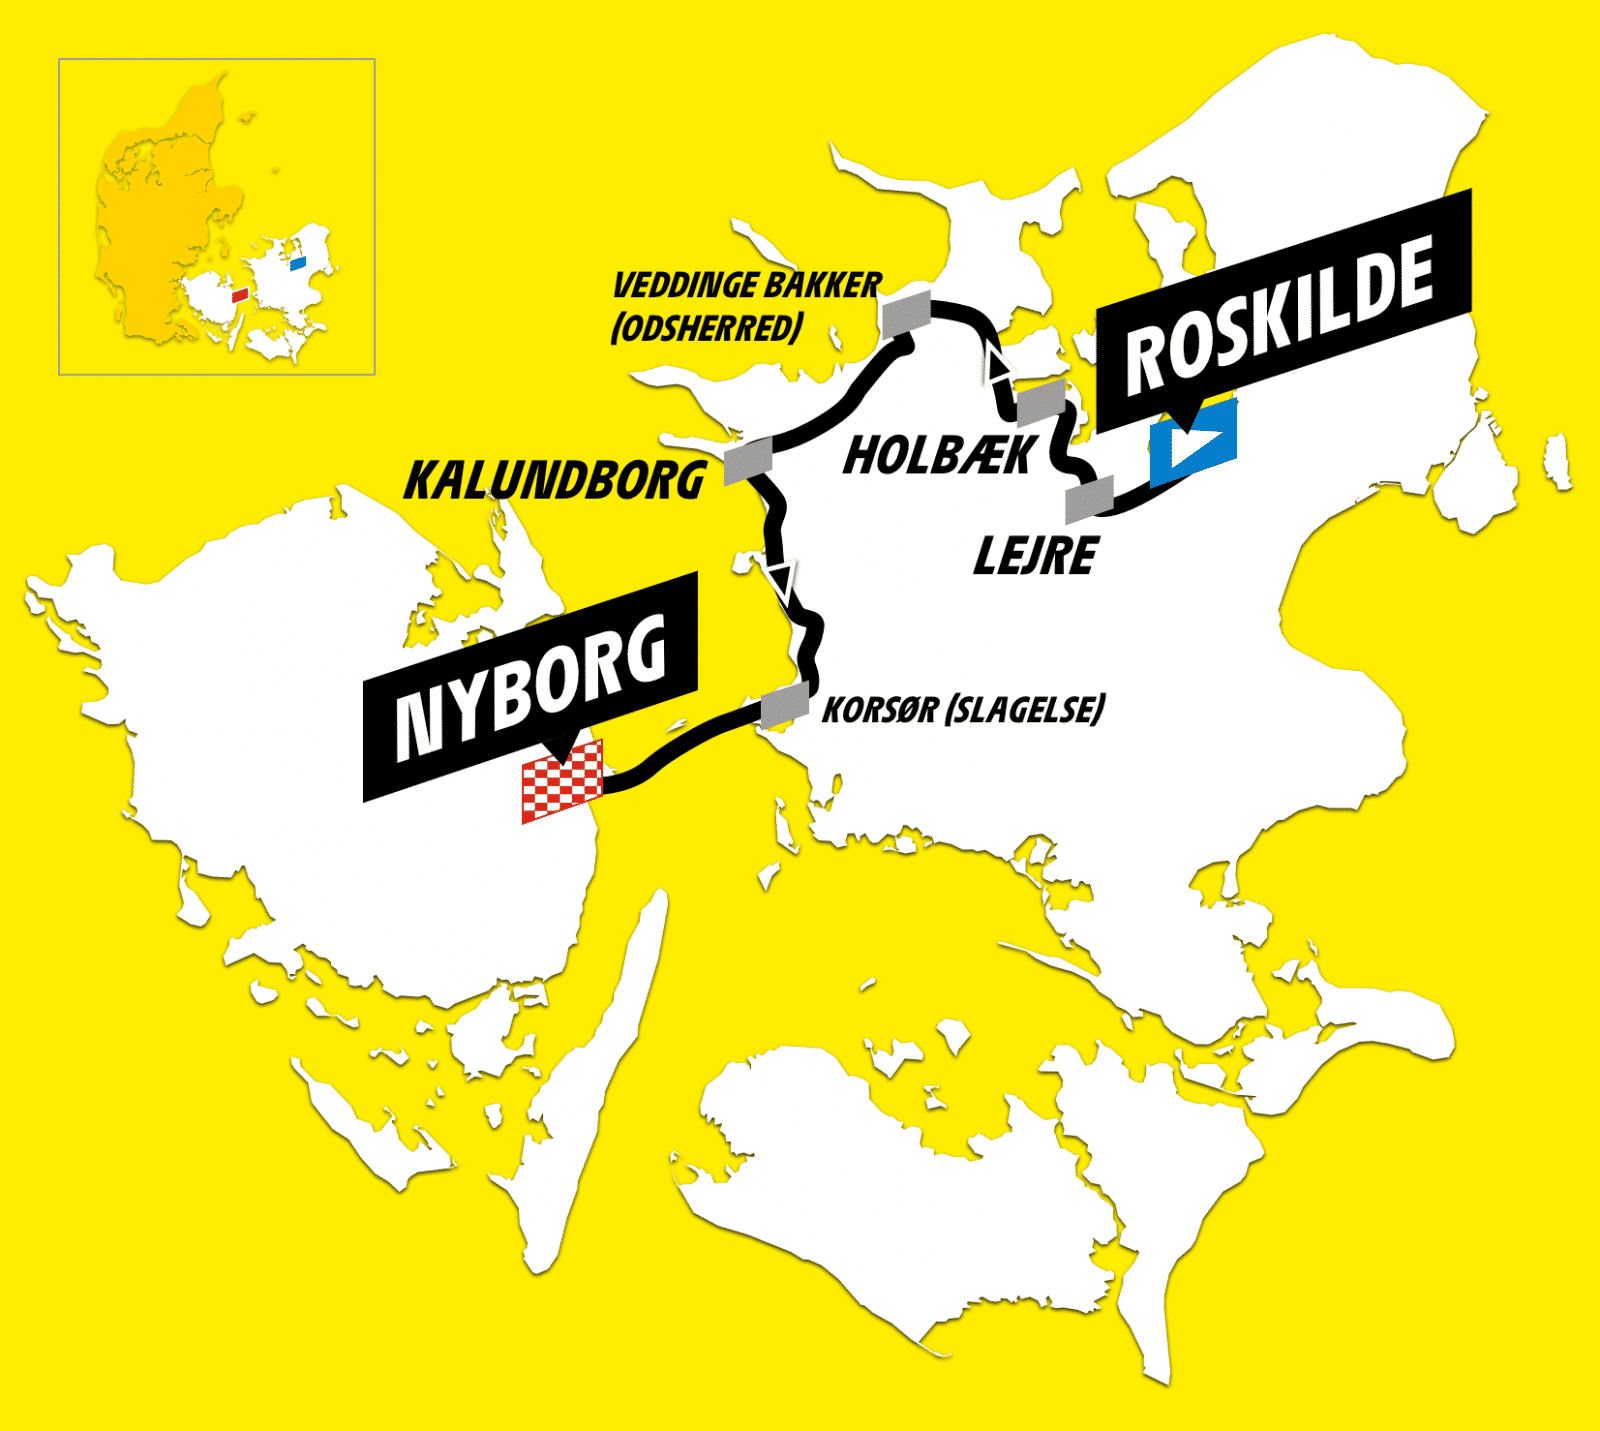 Oprigtighed øge Plateau Tour de France | The Tour started in Roskilde - Visit Fjordlandet